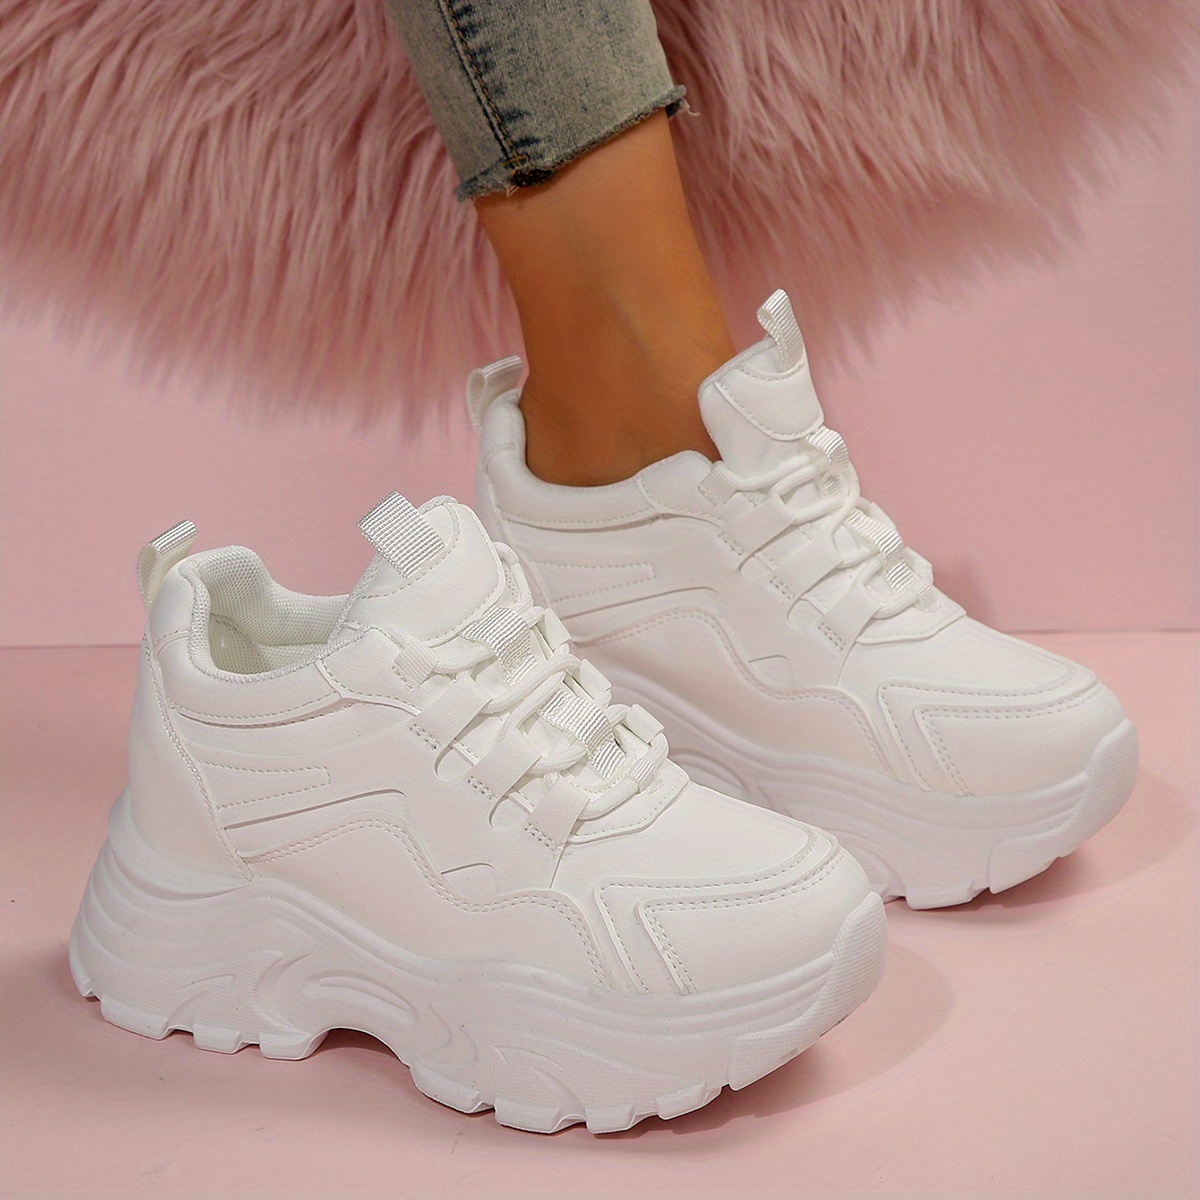 Platform sneakers for women, Buy online